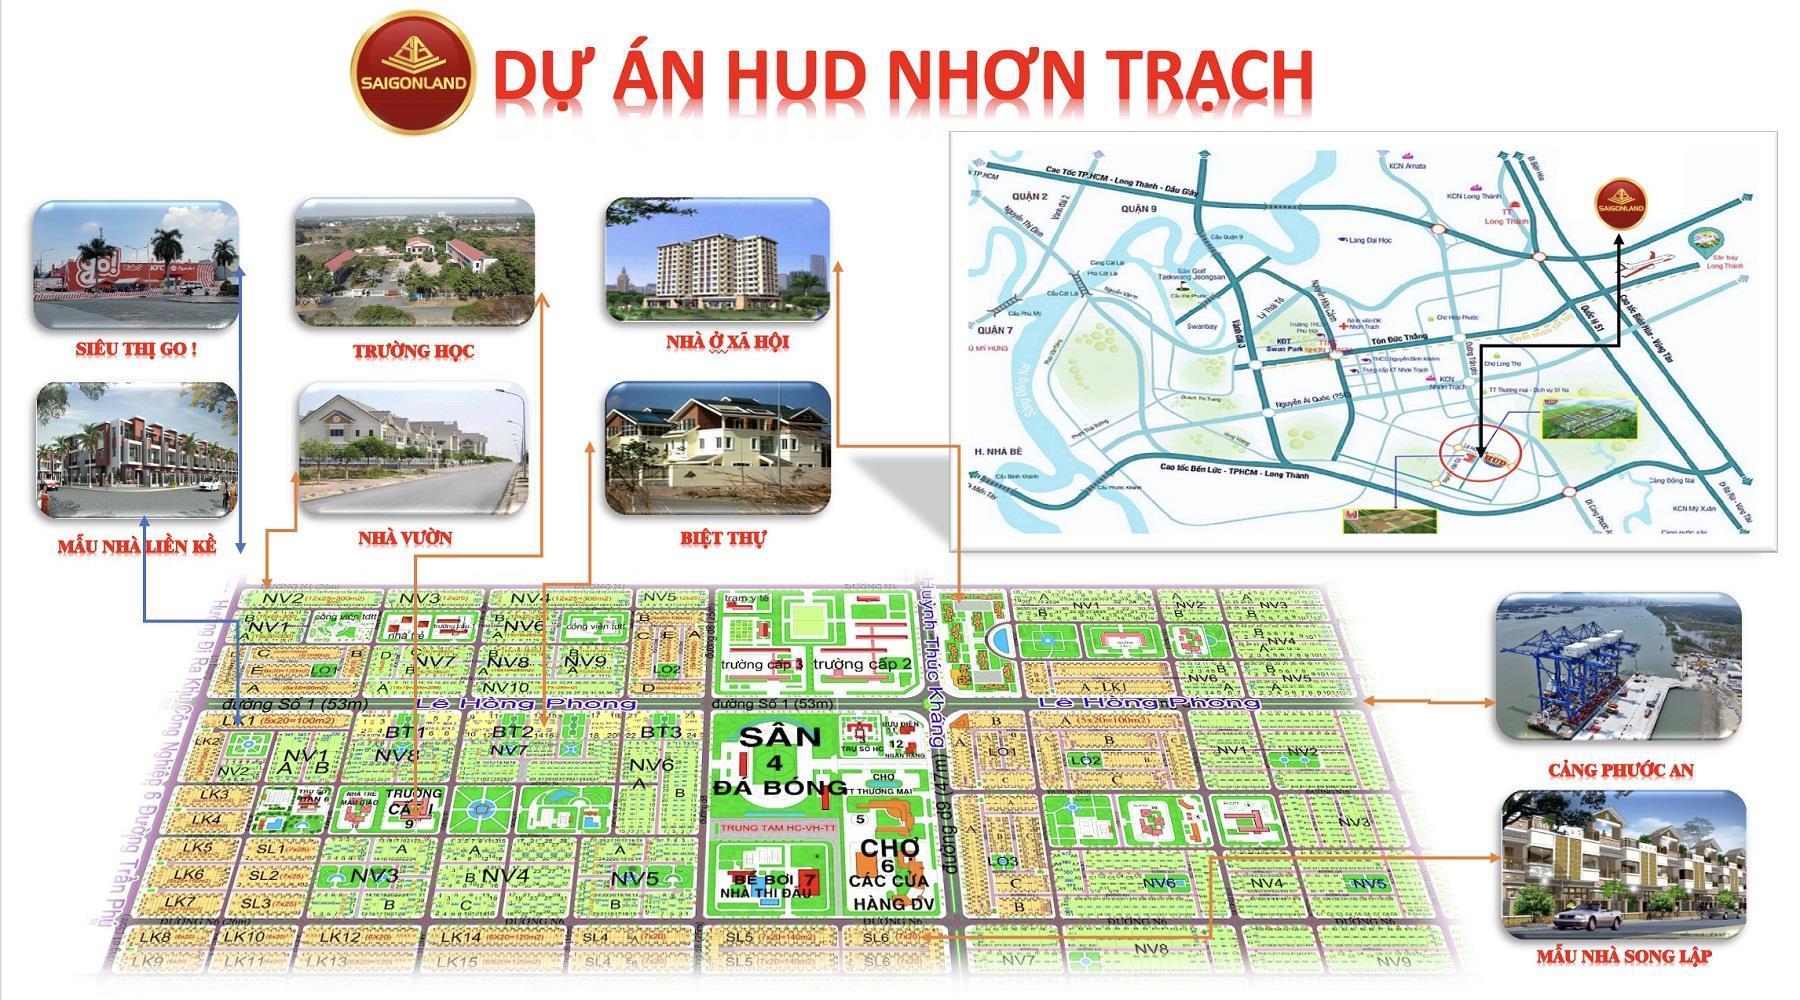 Công ty Saigonland Nhơn Trạch - mua bán đất nền KDC Long Thọ Phước An Nhơn Trạch Đồng Nai - Ảnh 1